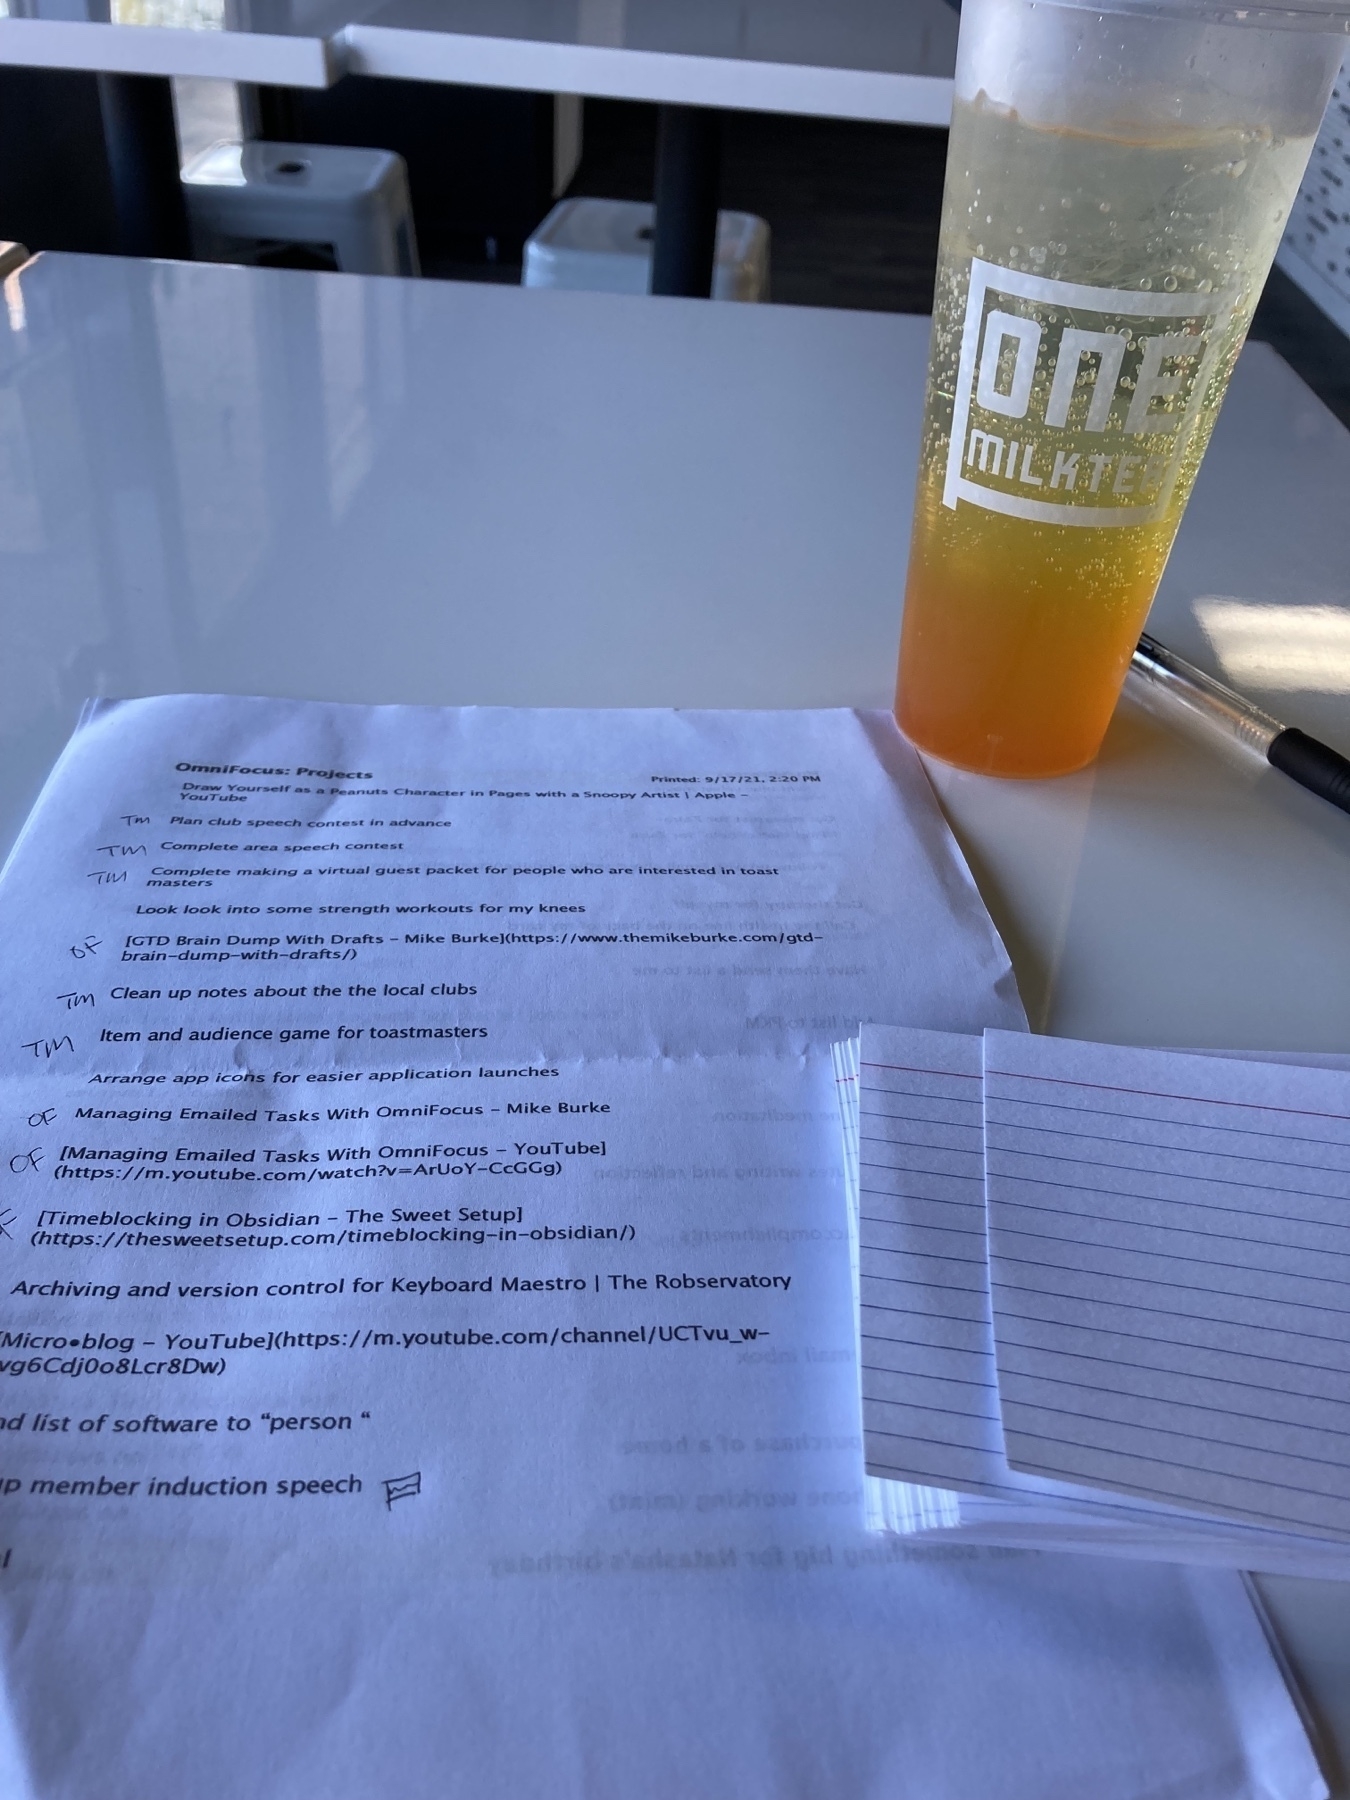 Tasks list next to a orange drink. 